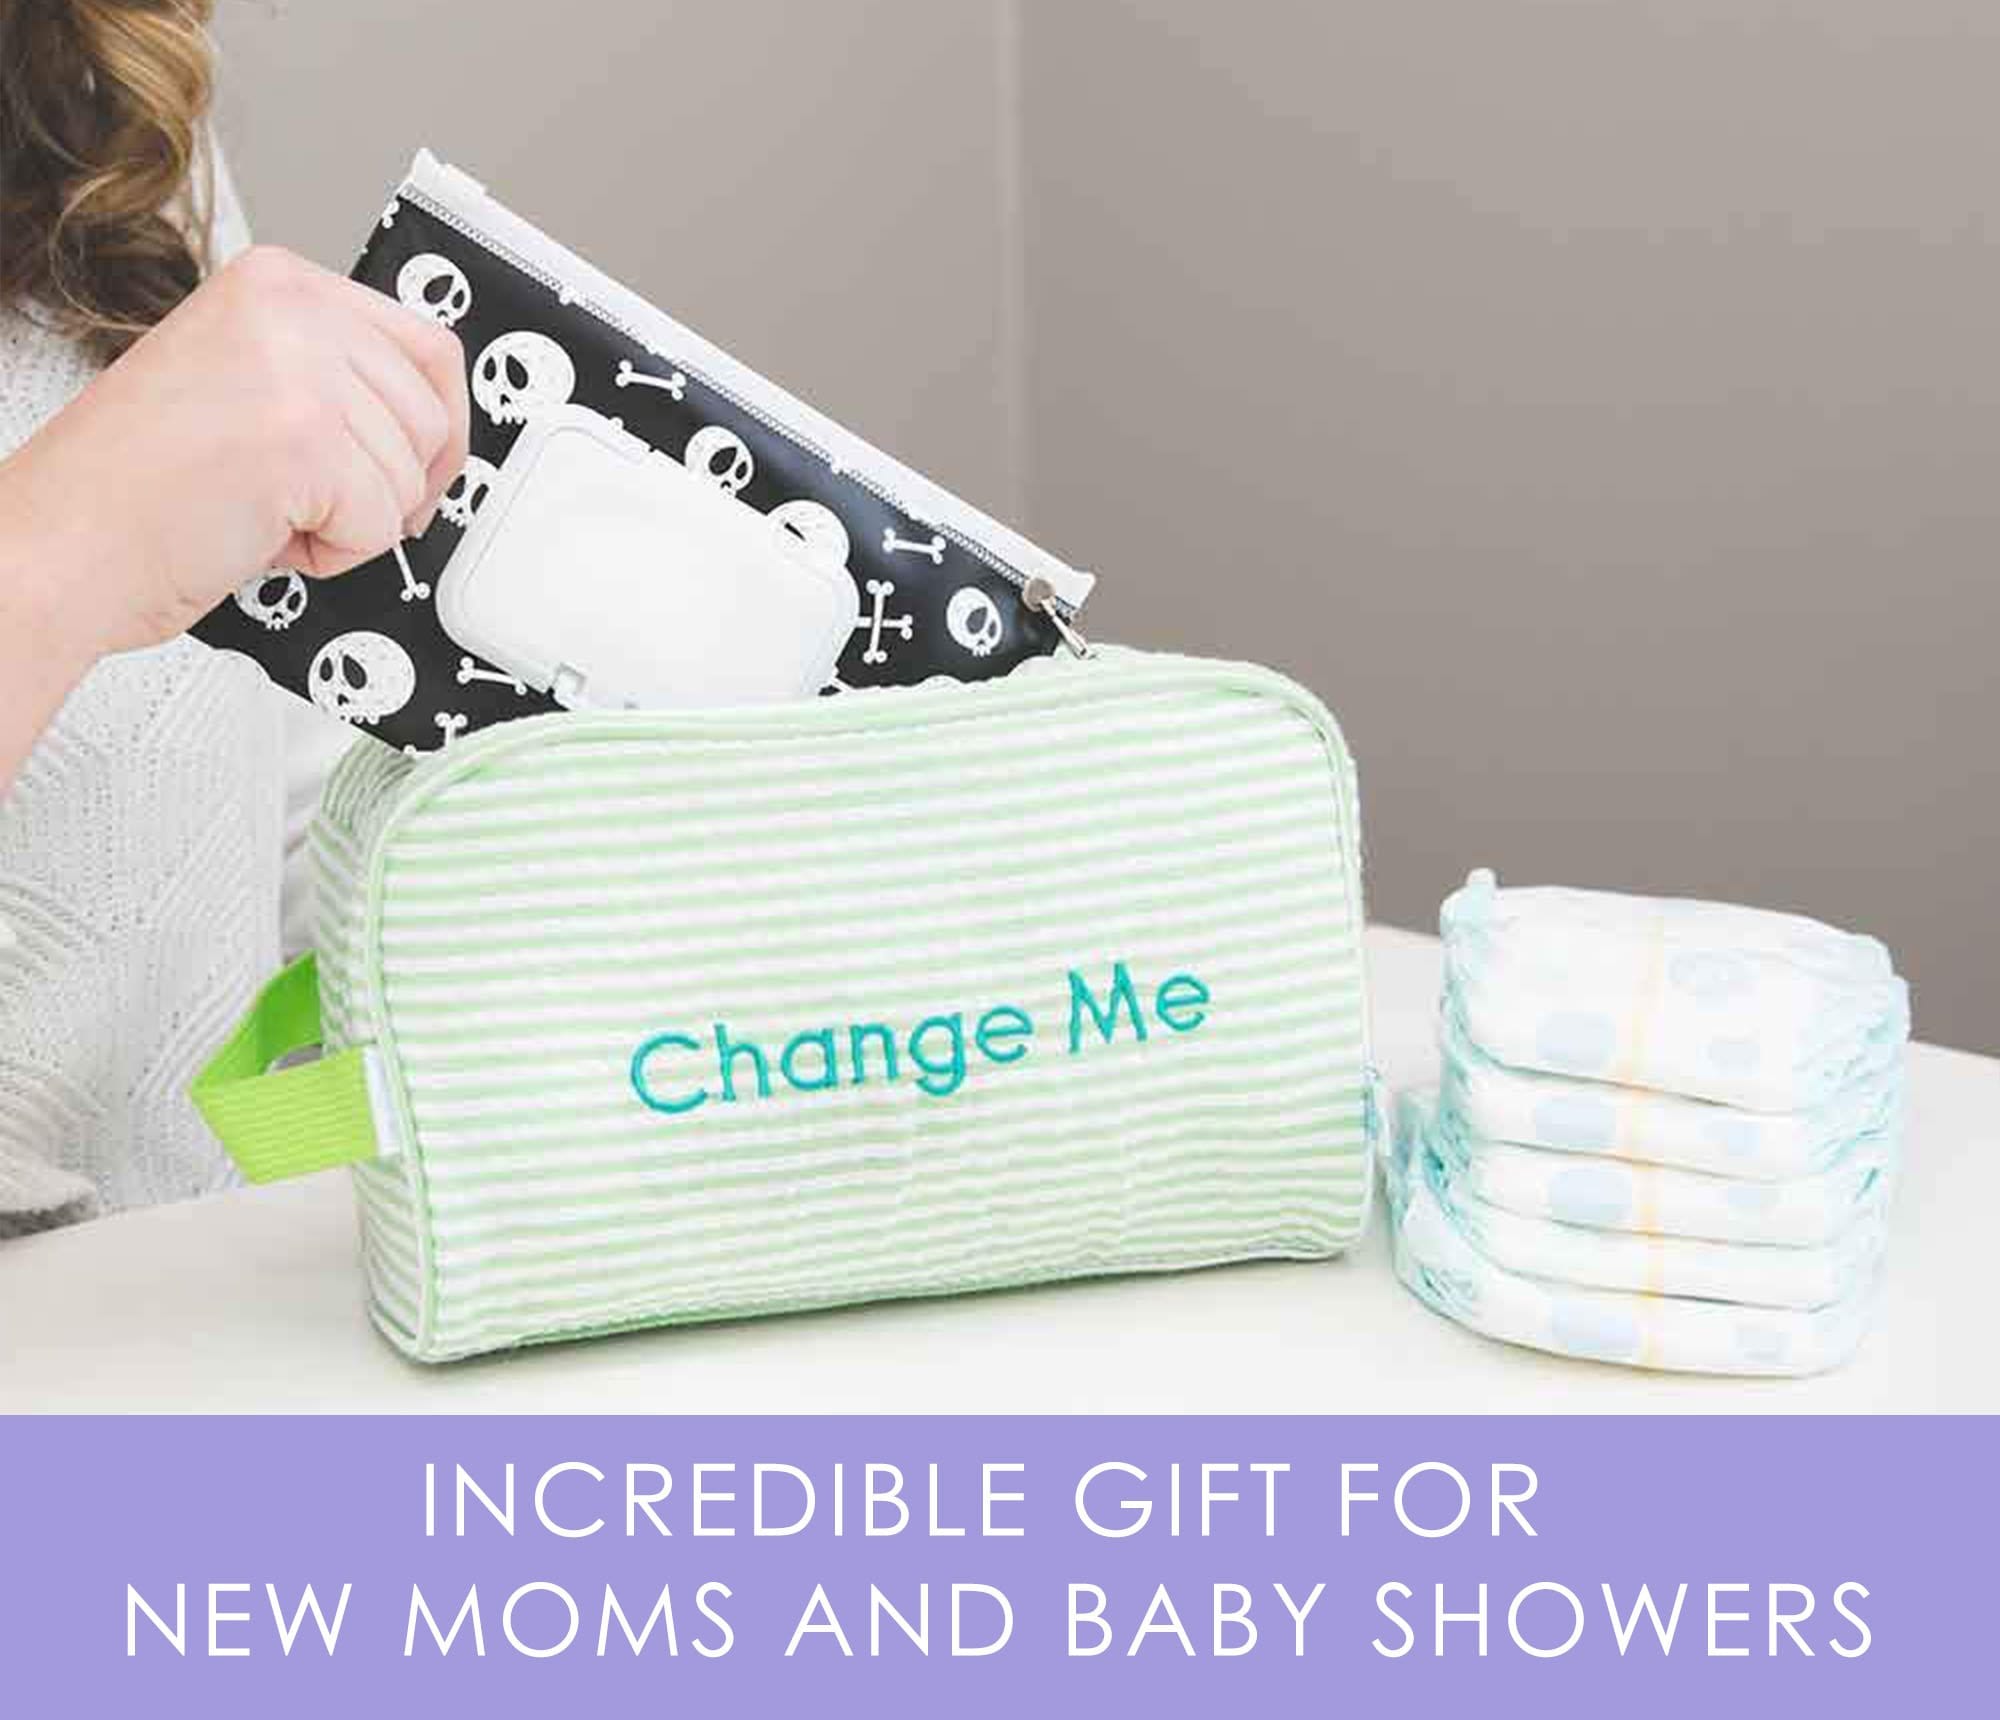 Easy Baby Diaper Bag Organizer Pouches: Best Baby Organizer – Easy